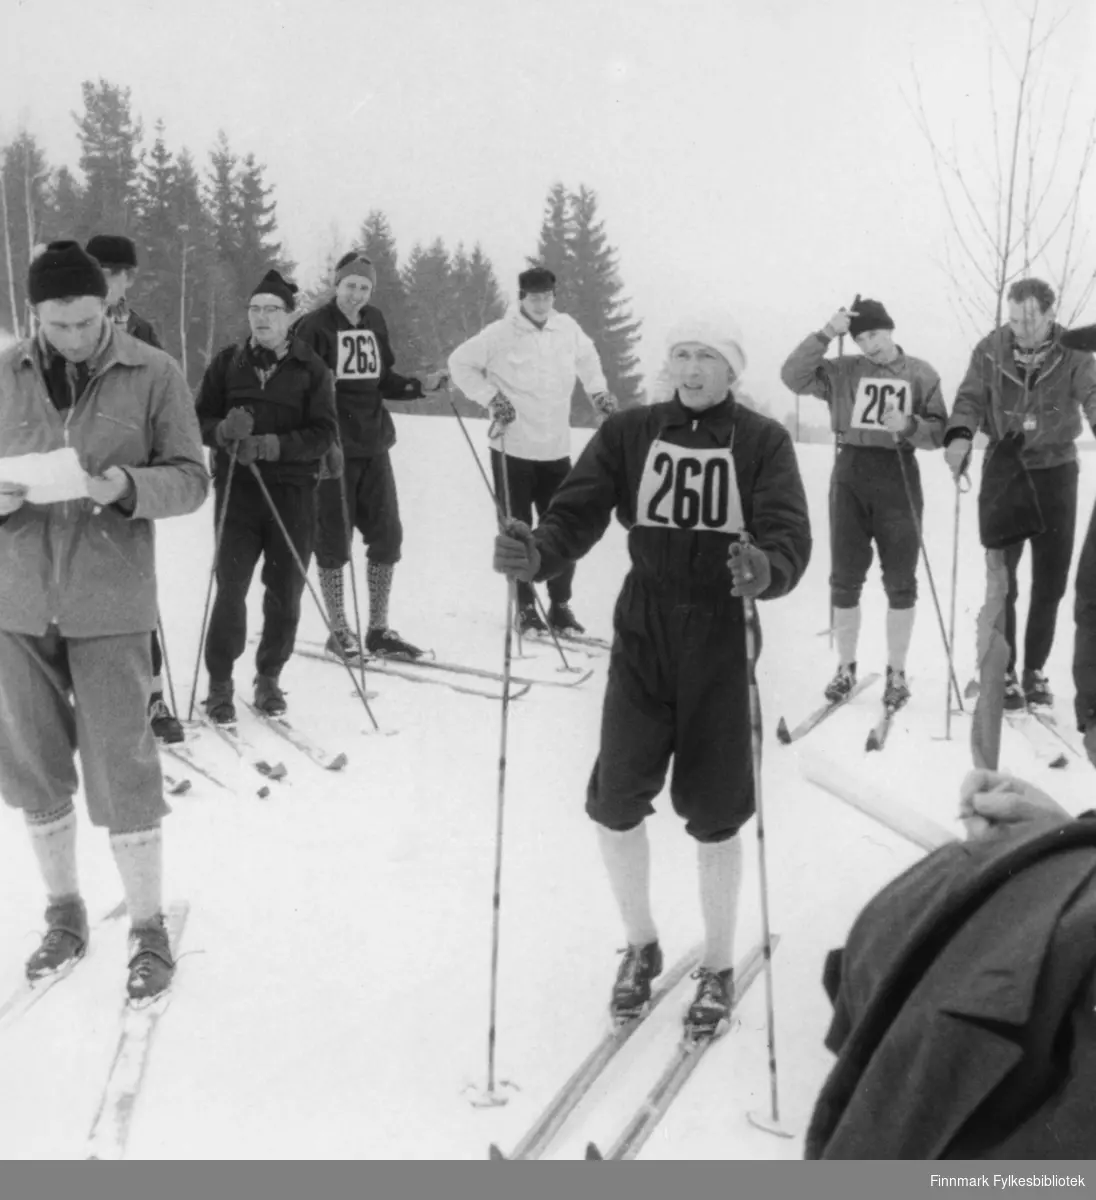 Lærerskolemesterskapet på ski (10 km) på Hamar 1957. Ragnvald Dahl gikk 2-årig lærerskole og vant langrennet begge årene.